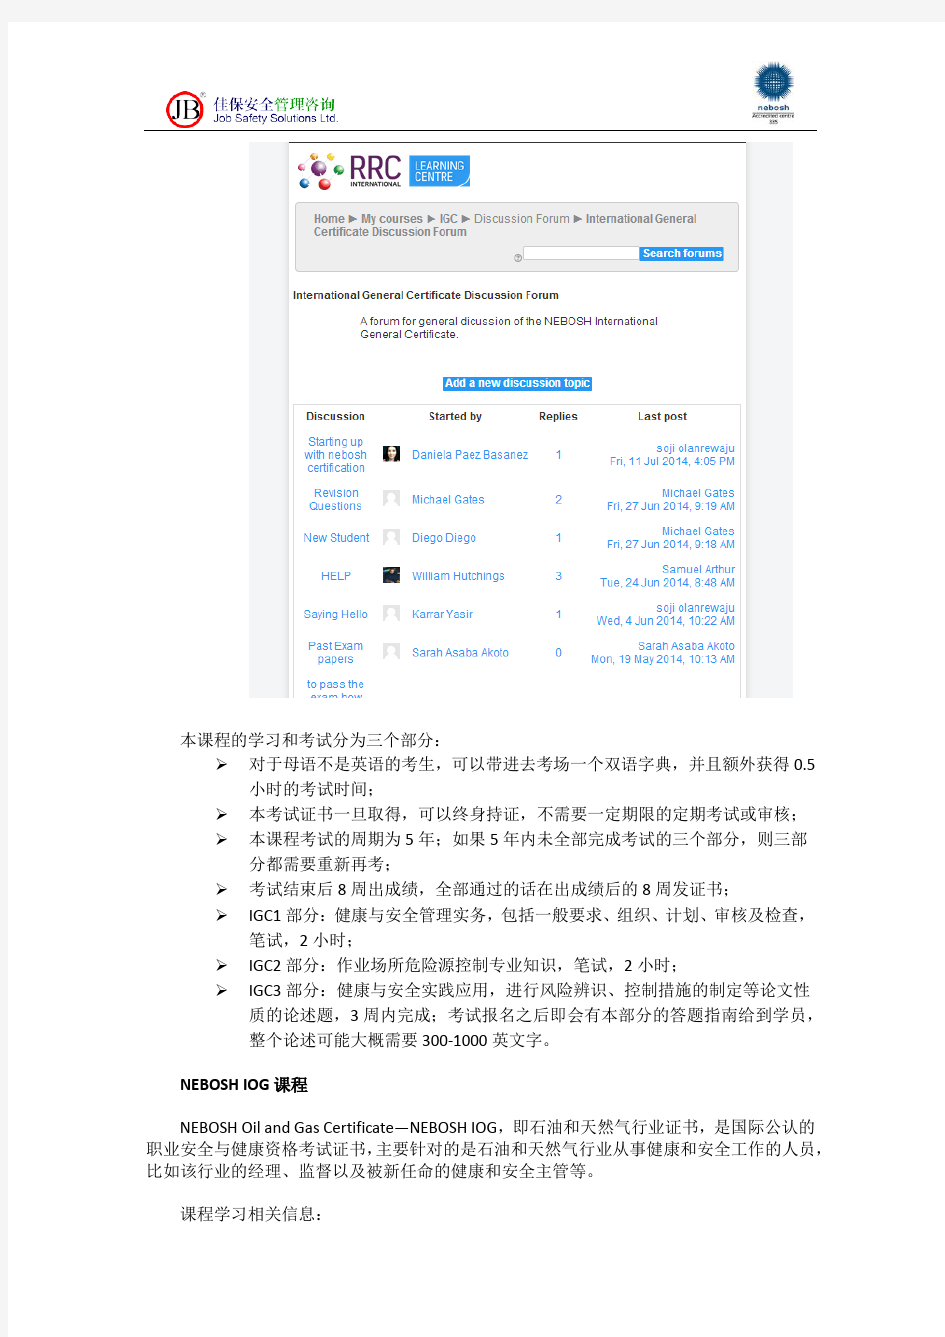 深圳市佳保安全NEBOSH在线课程学习和考试简介20140718